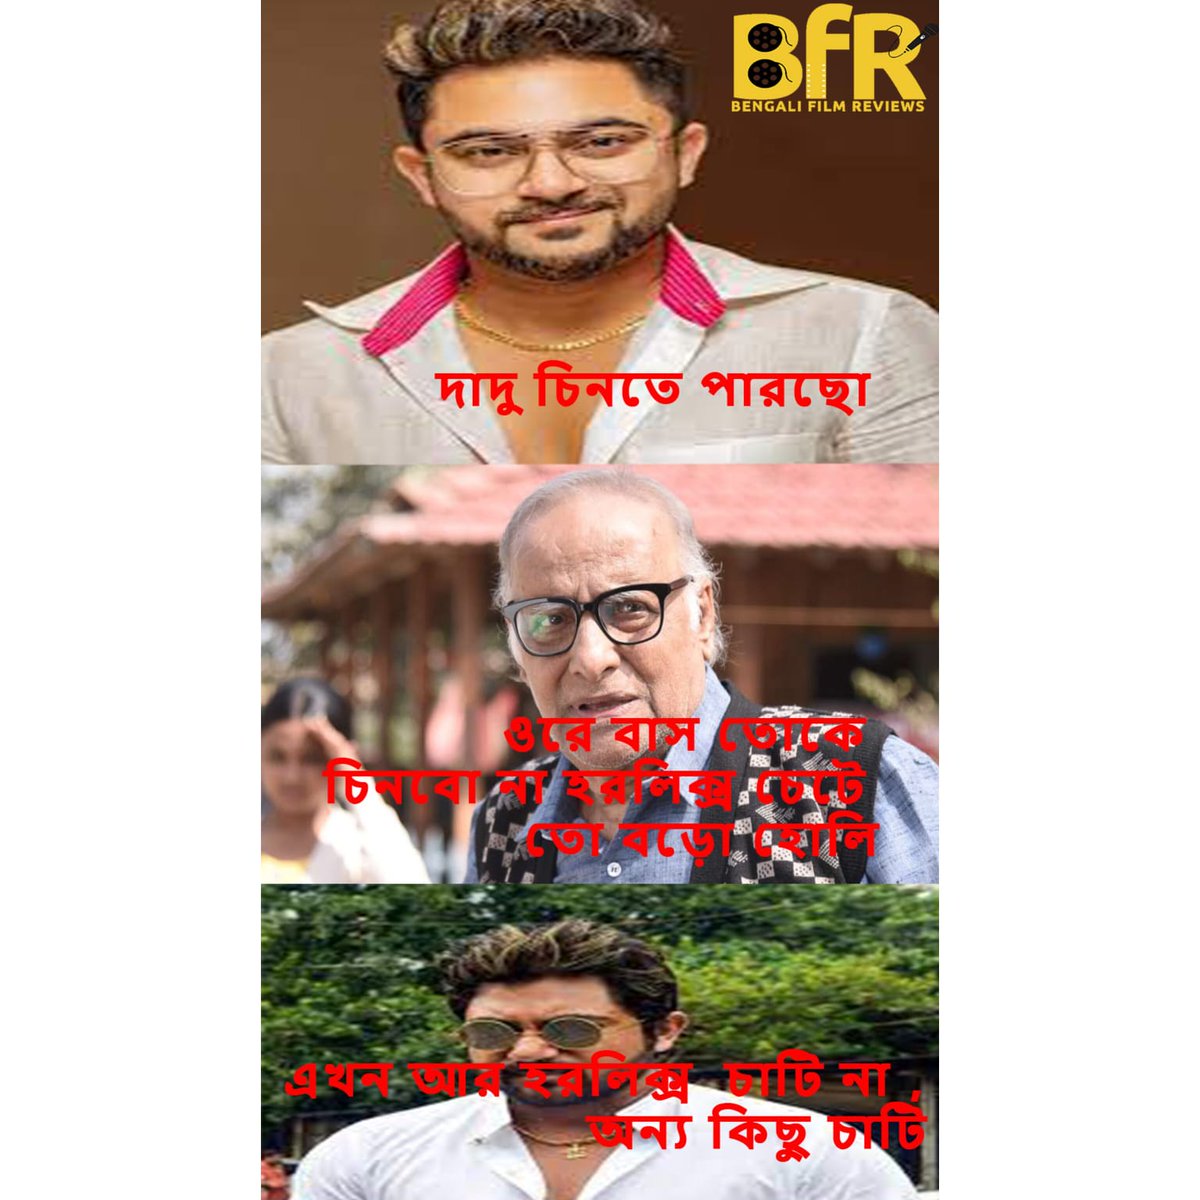 এ সত্য বড়ই কঠিন 🫢🫣
.
.
.
.
#soham #actor #bengali #bfrmemes #bfr #bengalifilmreviews #comedy #fun #entertainment #bengalimovies #memecontent #memesviral